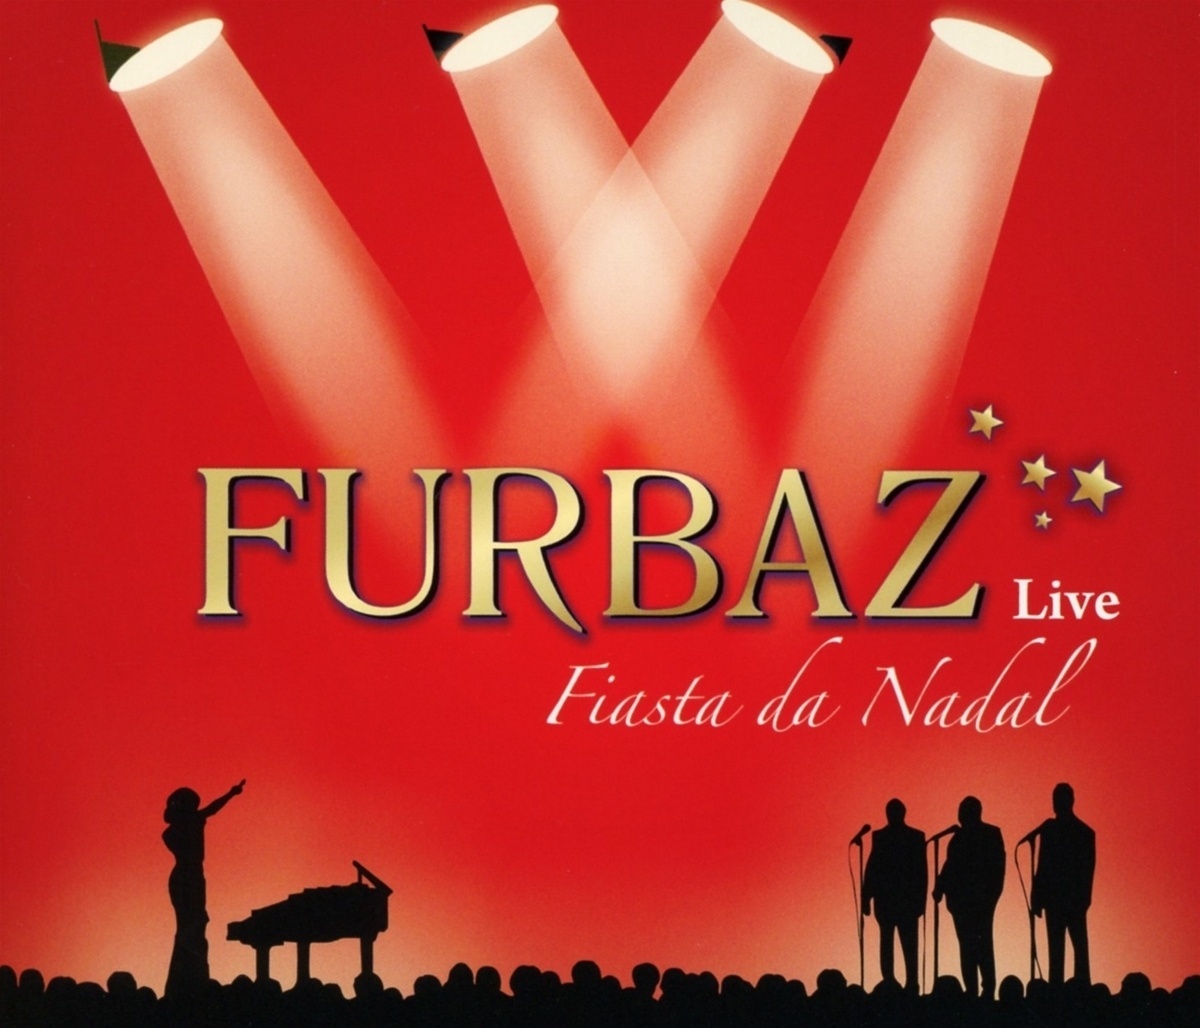 Fiasta Da Nadal-Live - Furbaz. (CD)